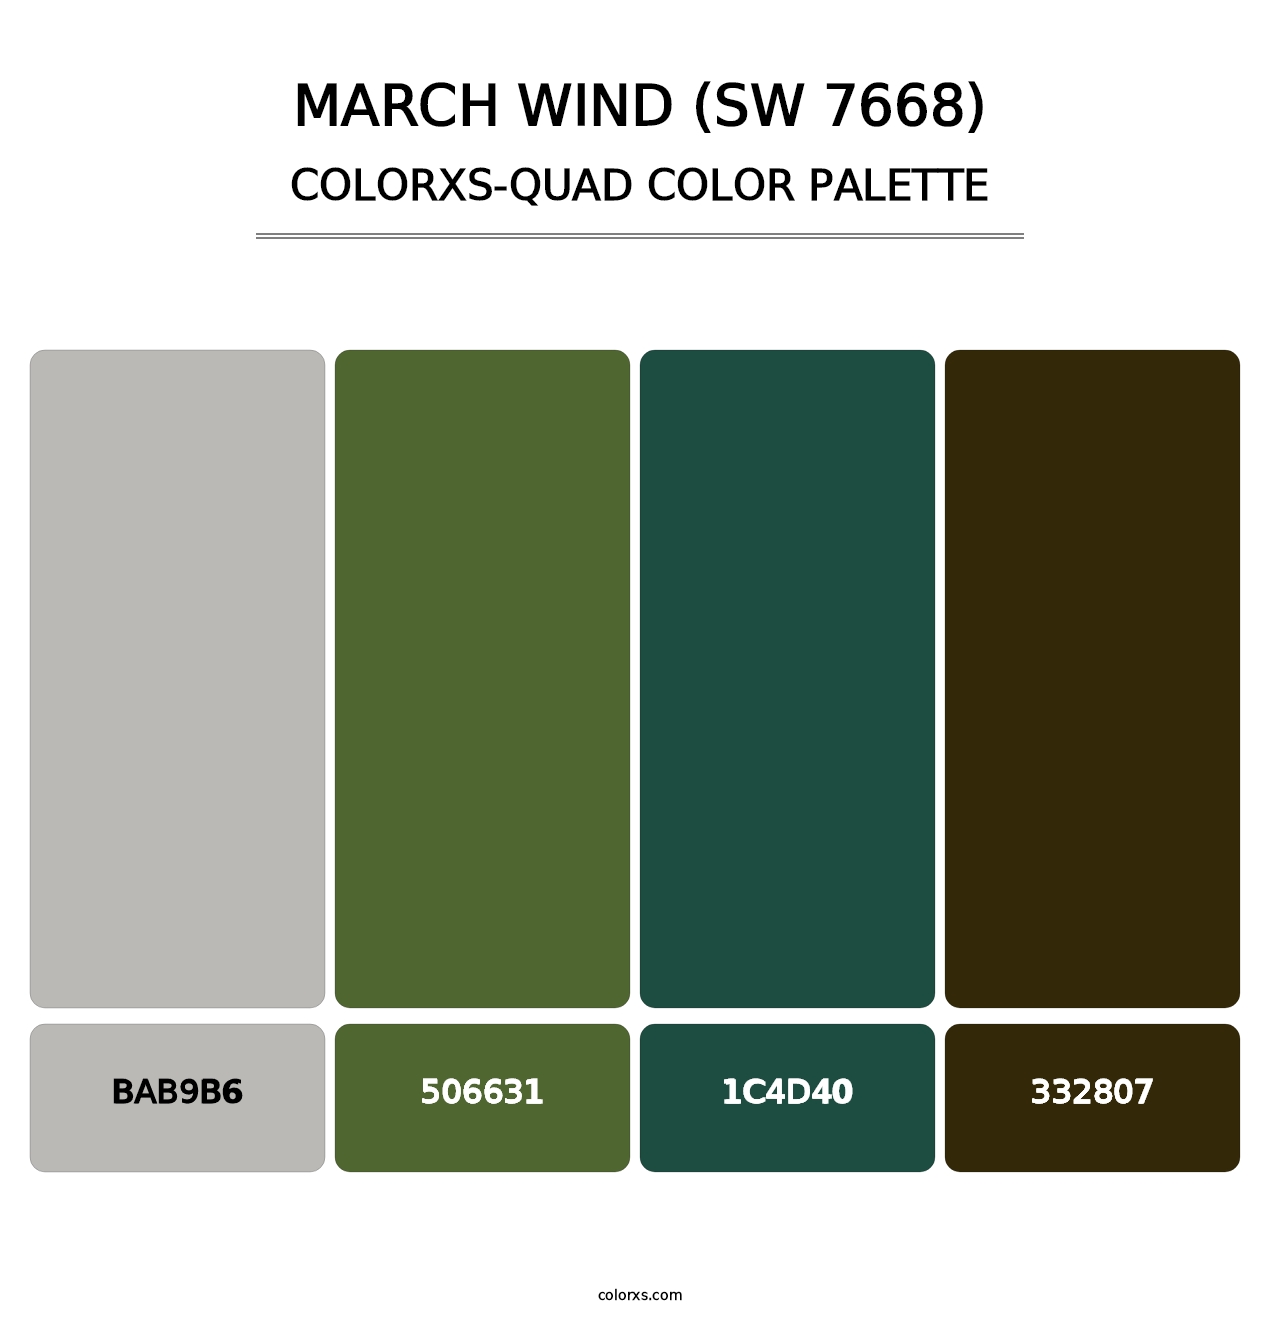 March Wind (SW 7668) - Colorxs Quad Palette